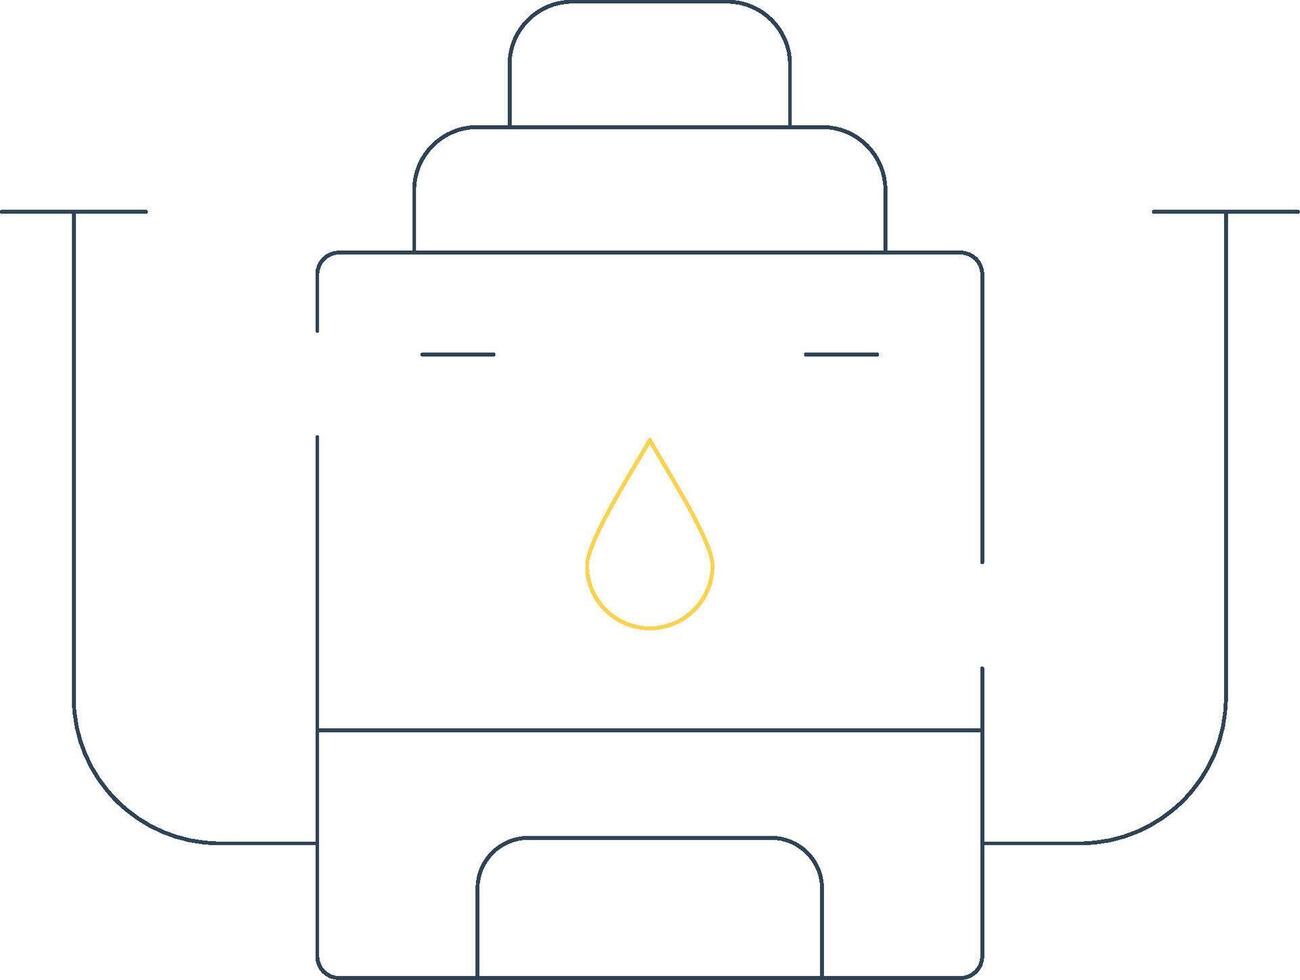 conception d'icône créative de chaudière à eau vecteur